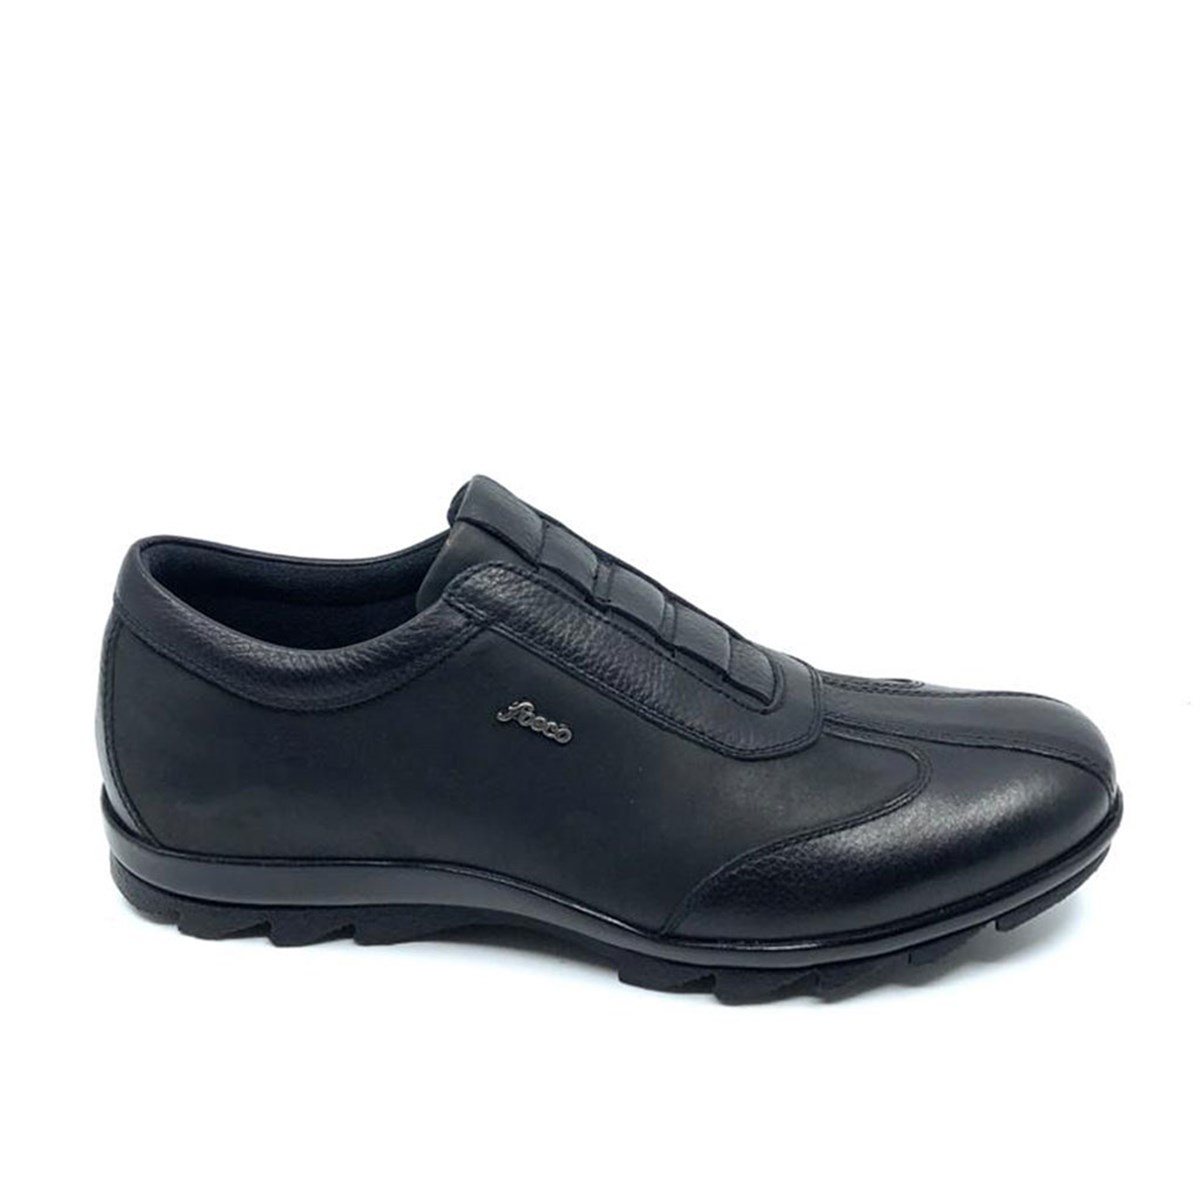 Siyah Casual Kışlık Erkek Ayakkabı 9534 551 635 - Fosco